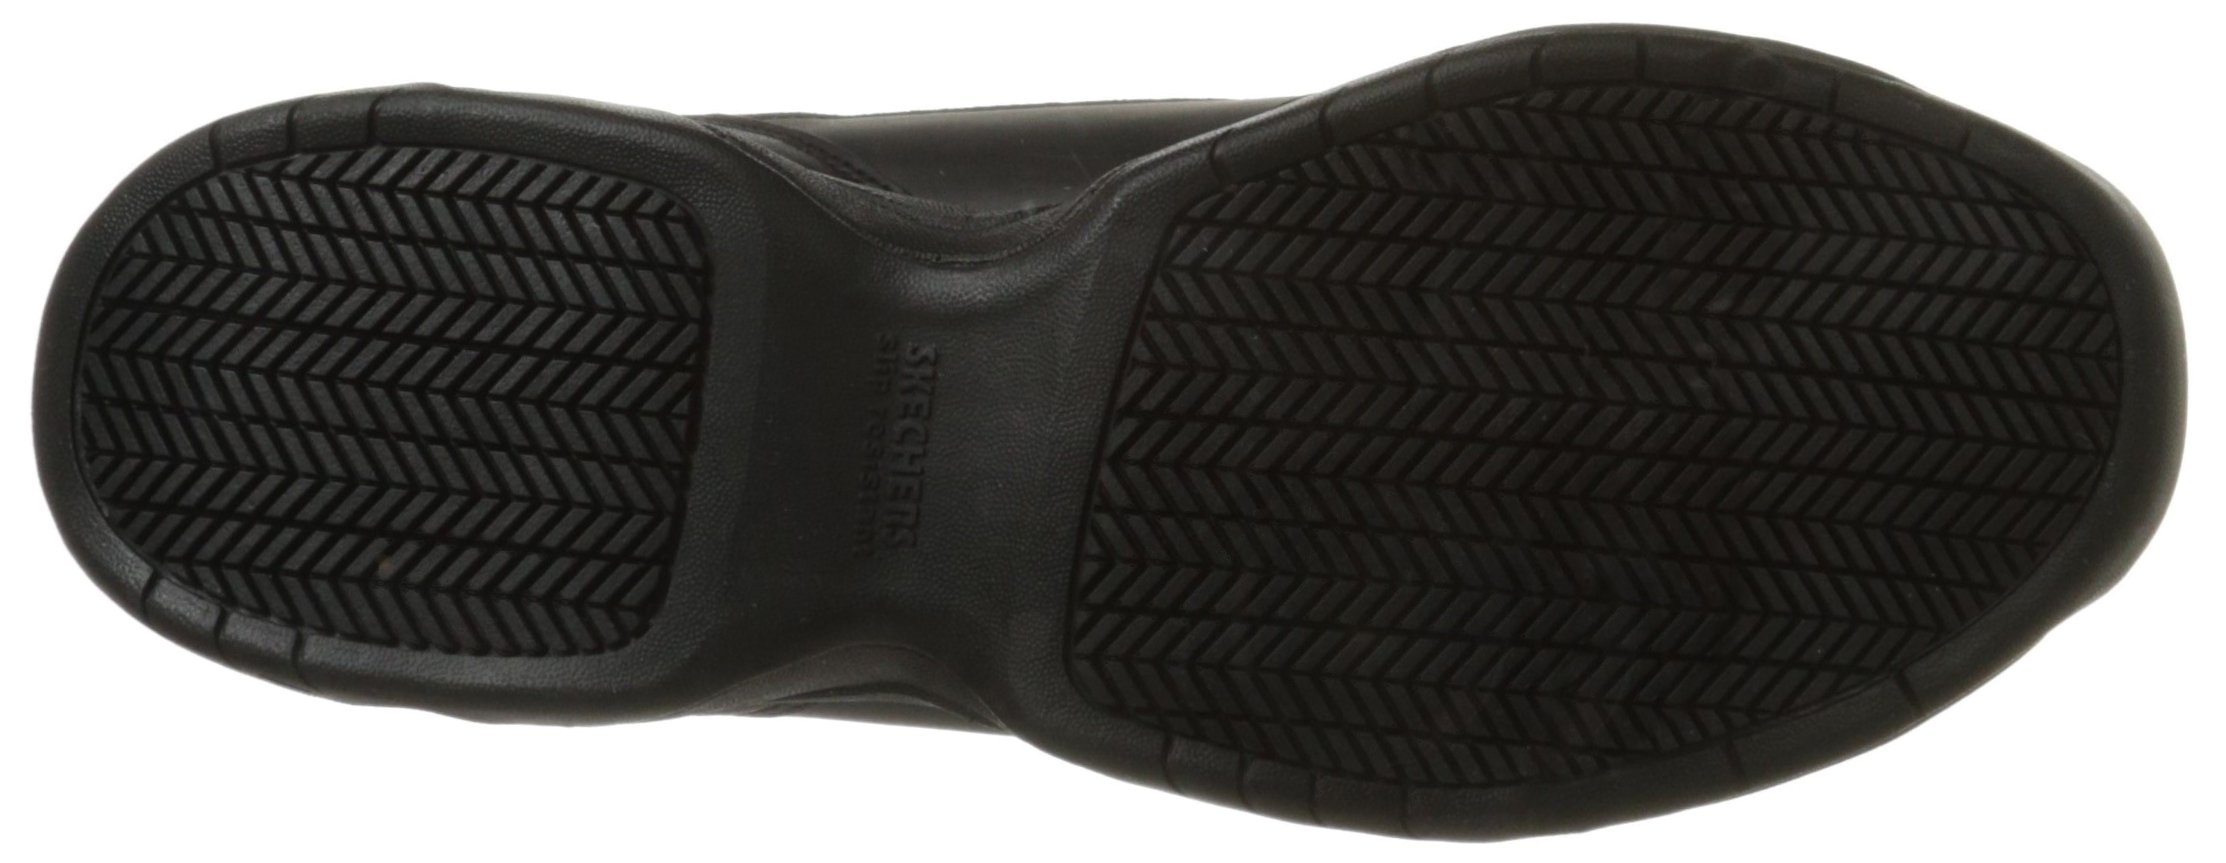 Skechers Work Skechers for Work Men's Felton Slip Resistant Relaxed-Fit Work Shoe